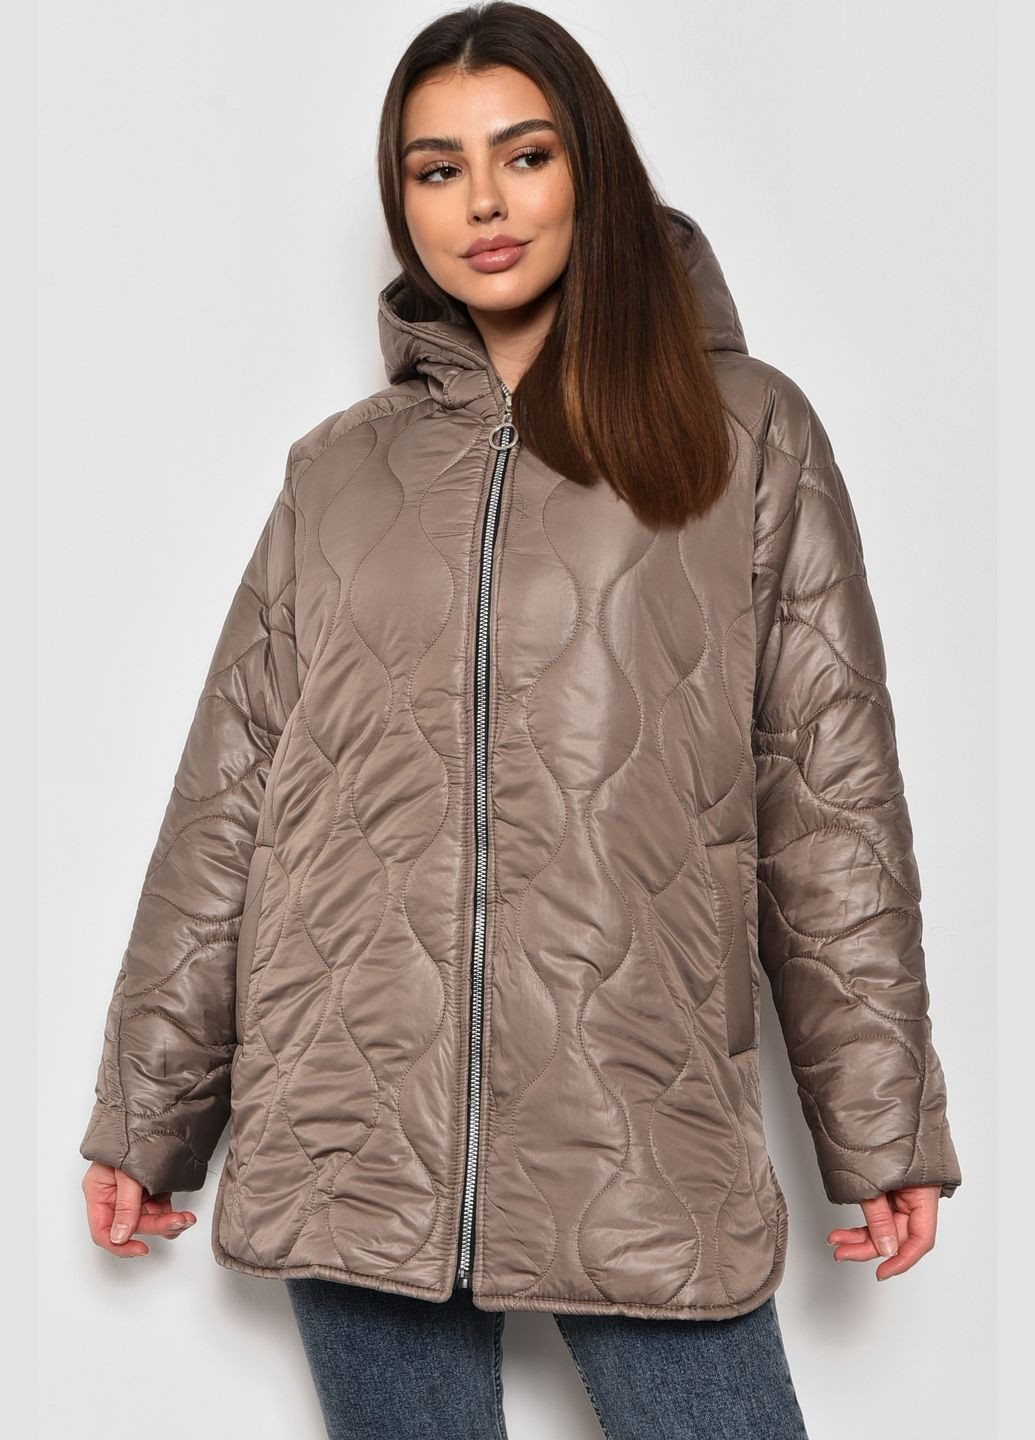 Бежевая демисезонная куртка женская полубатальная демисезонная бежевого цвета Let's Shop